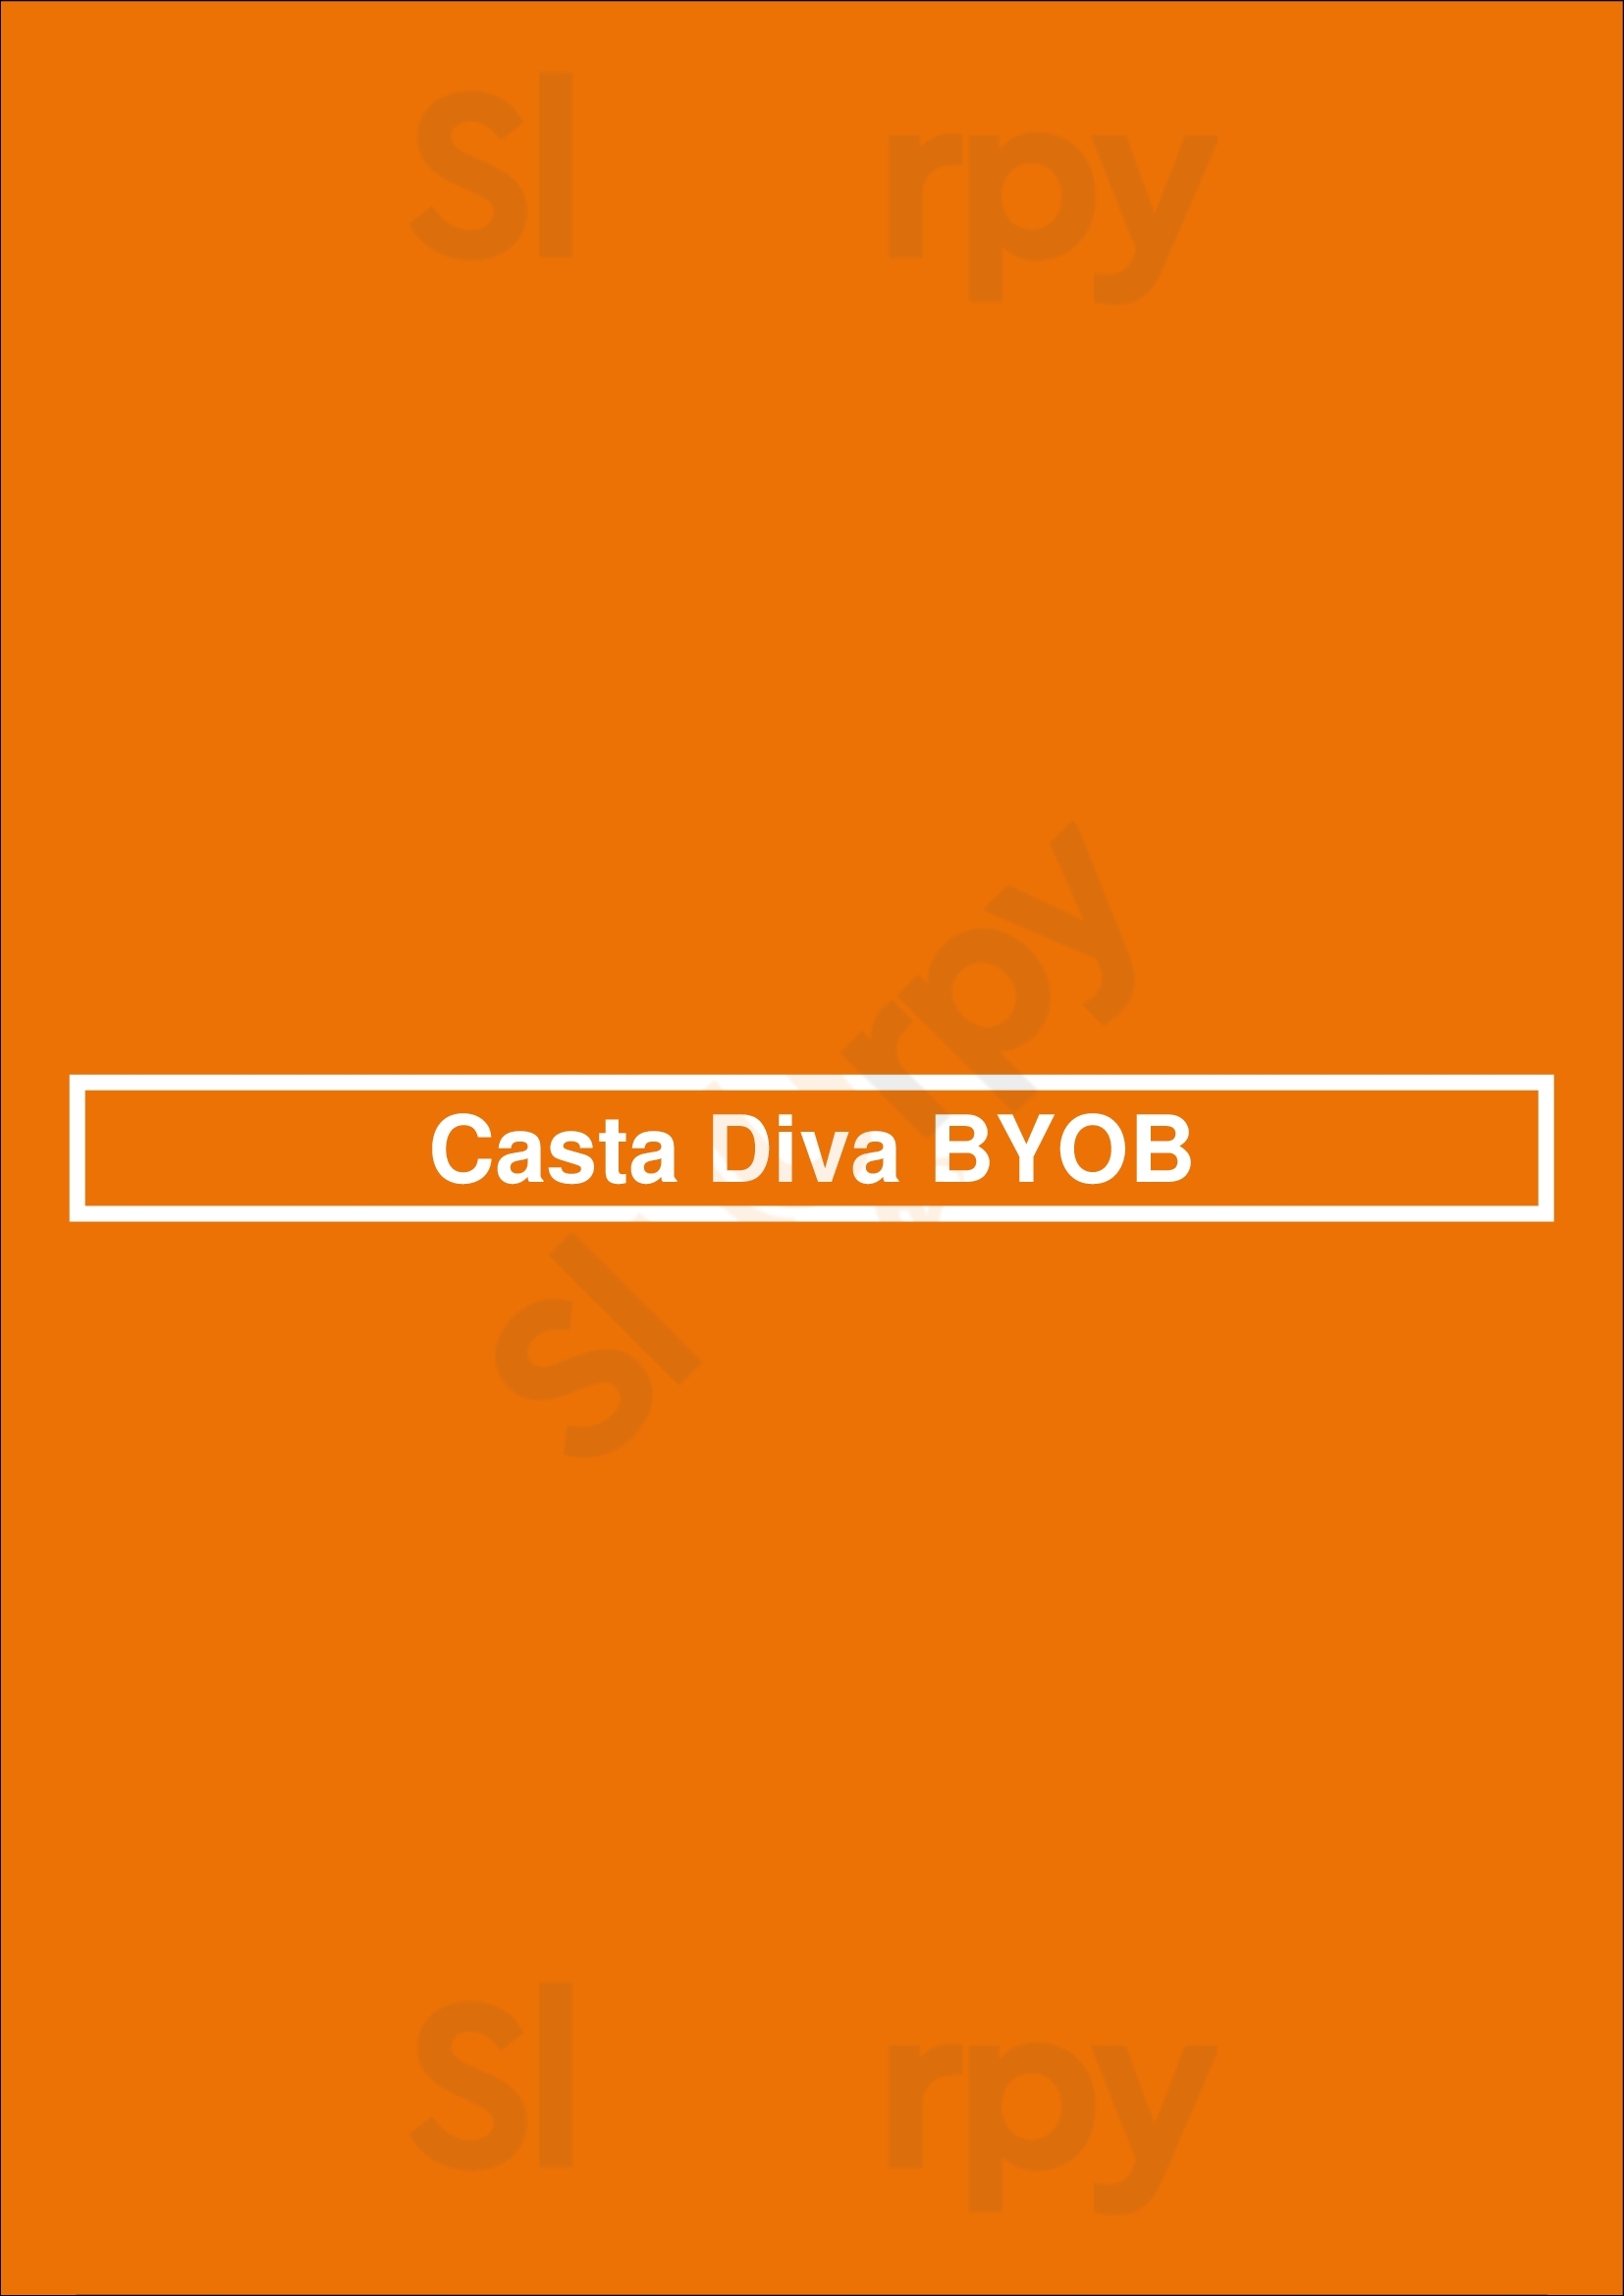 Casta Diva Byob Philadelphia Menu - 1